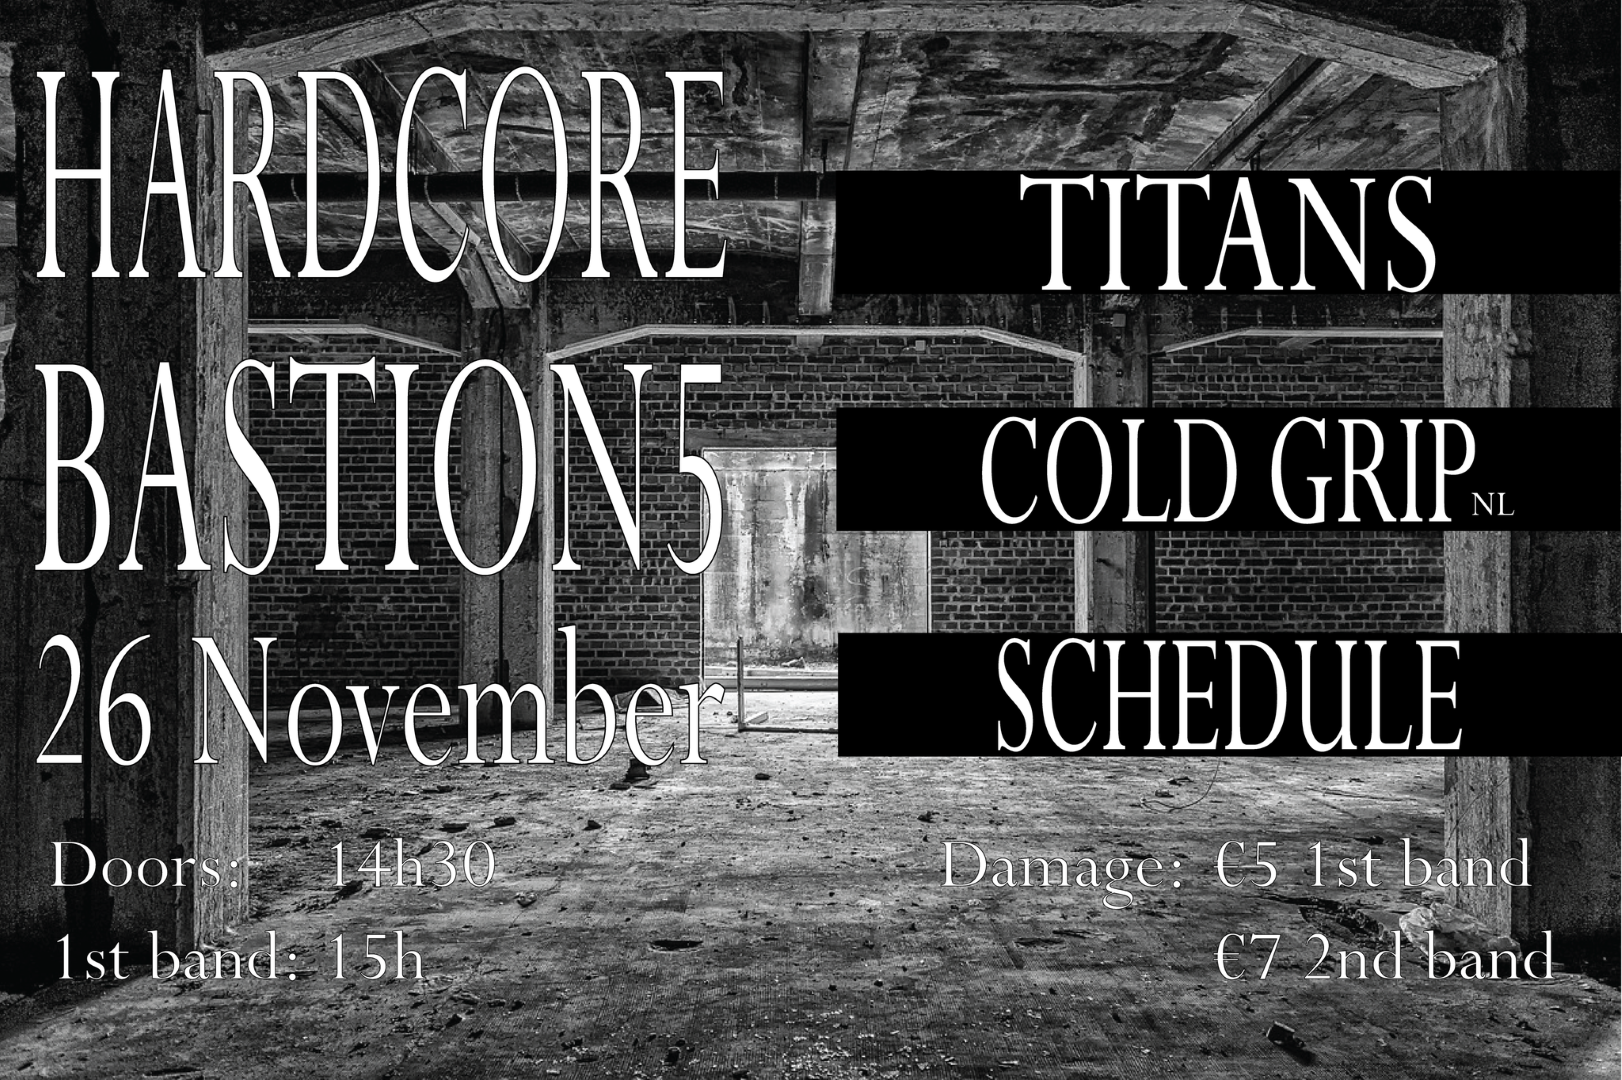 Concert: Cold Grip(NL) + Titans + Schedule